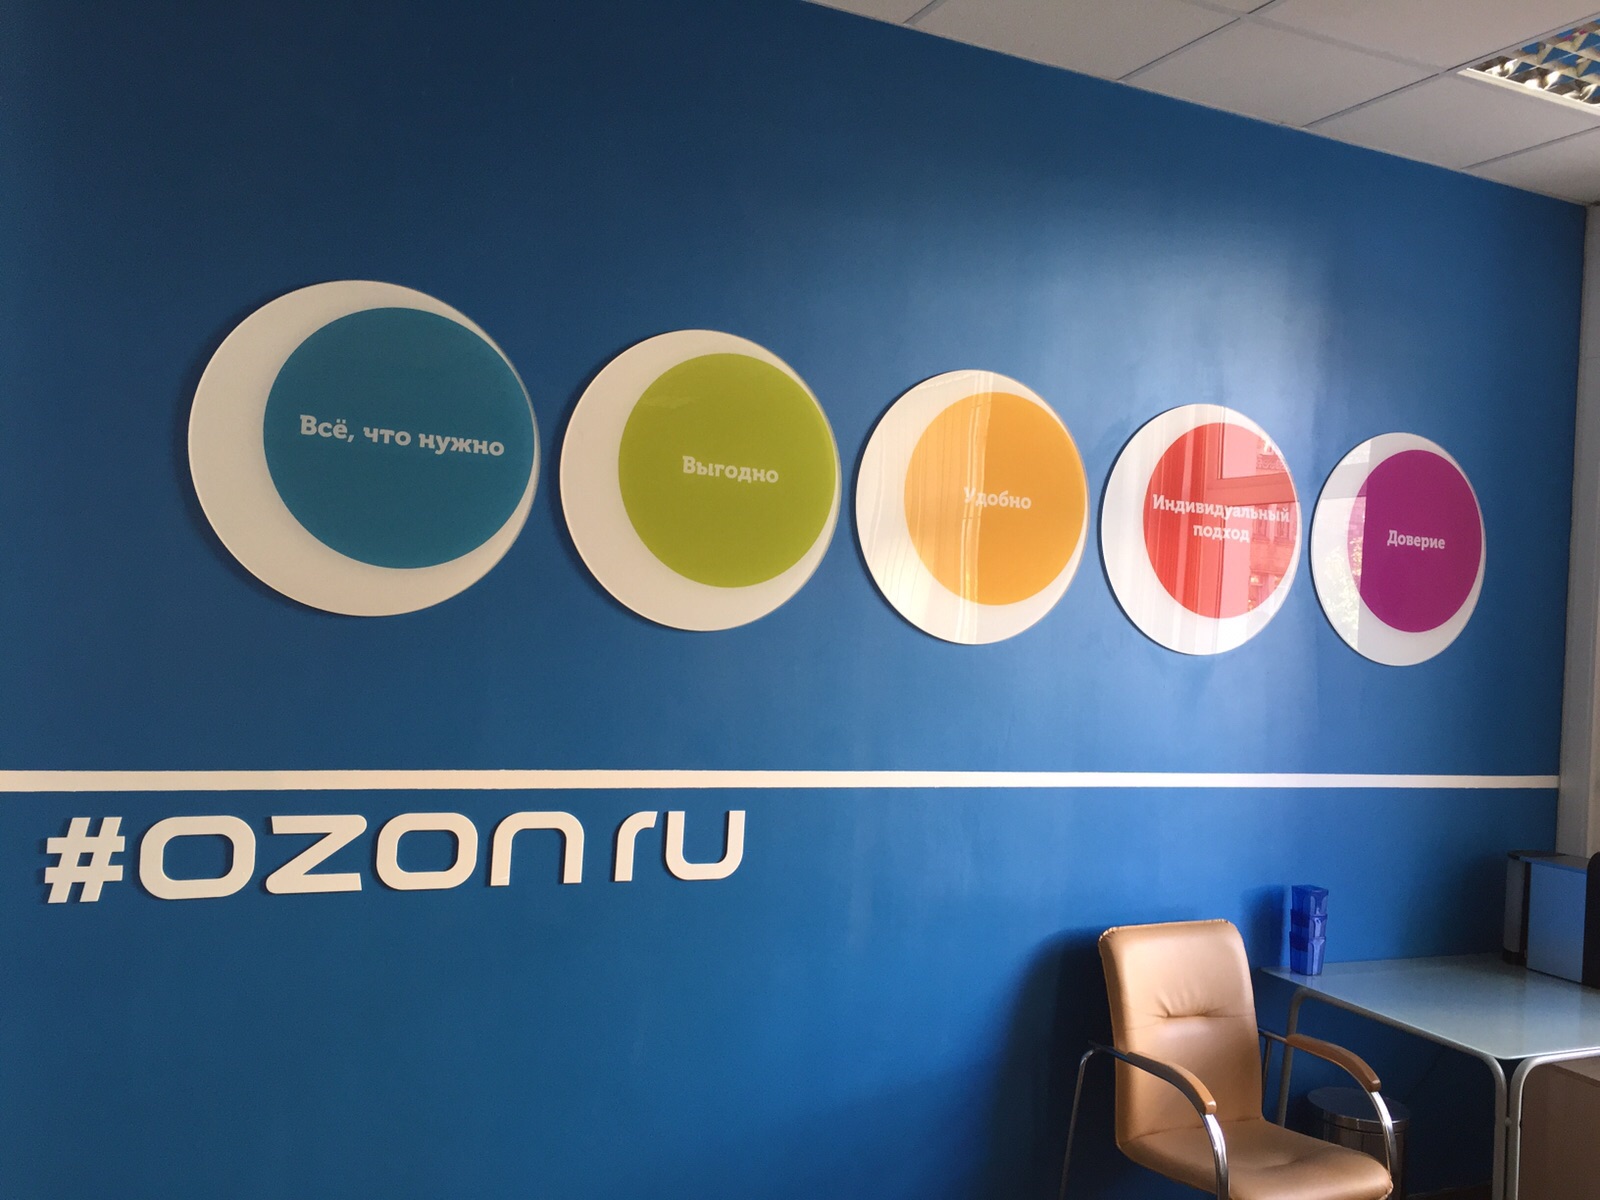 Телекомунікаційна компанія МТС і комерційні структури, афілійовані з фондом Baring Vostok, мають намір наростити свою присутність в капіталі інтернет-холдингу Ozon